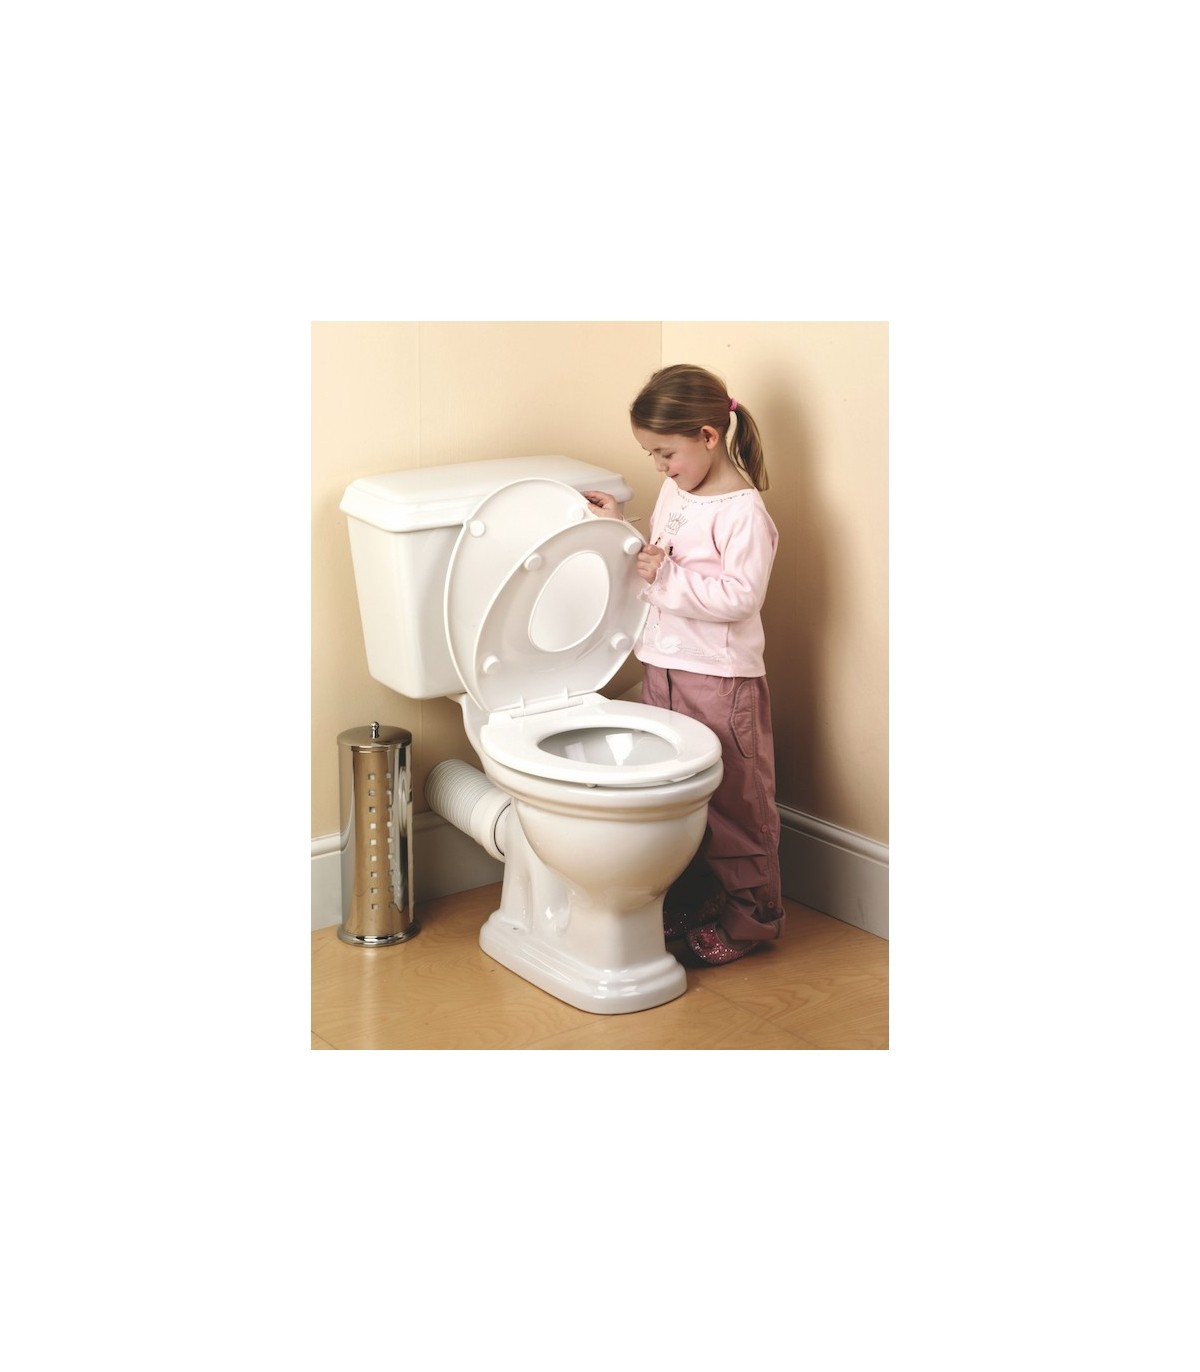 Reducteur toilette enfant avec Marche, Coussin – Siège de toilette